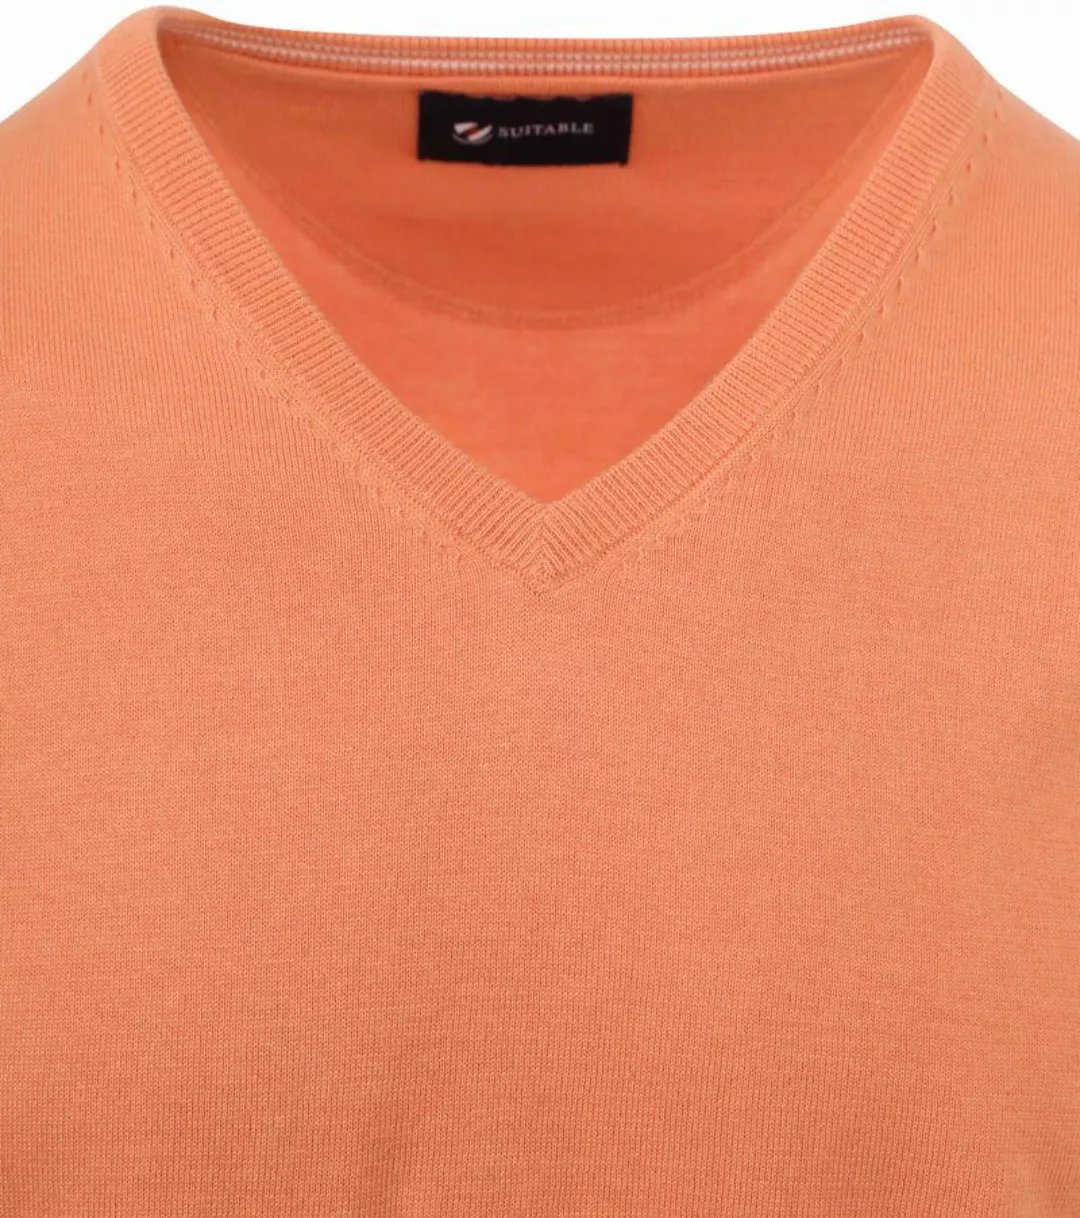 Suitable Pullover Vini V-Ausschnitt Orange - Größe L günstig online kaufen